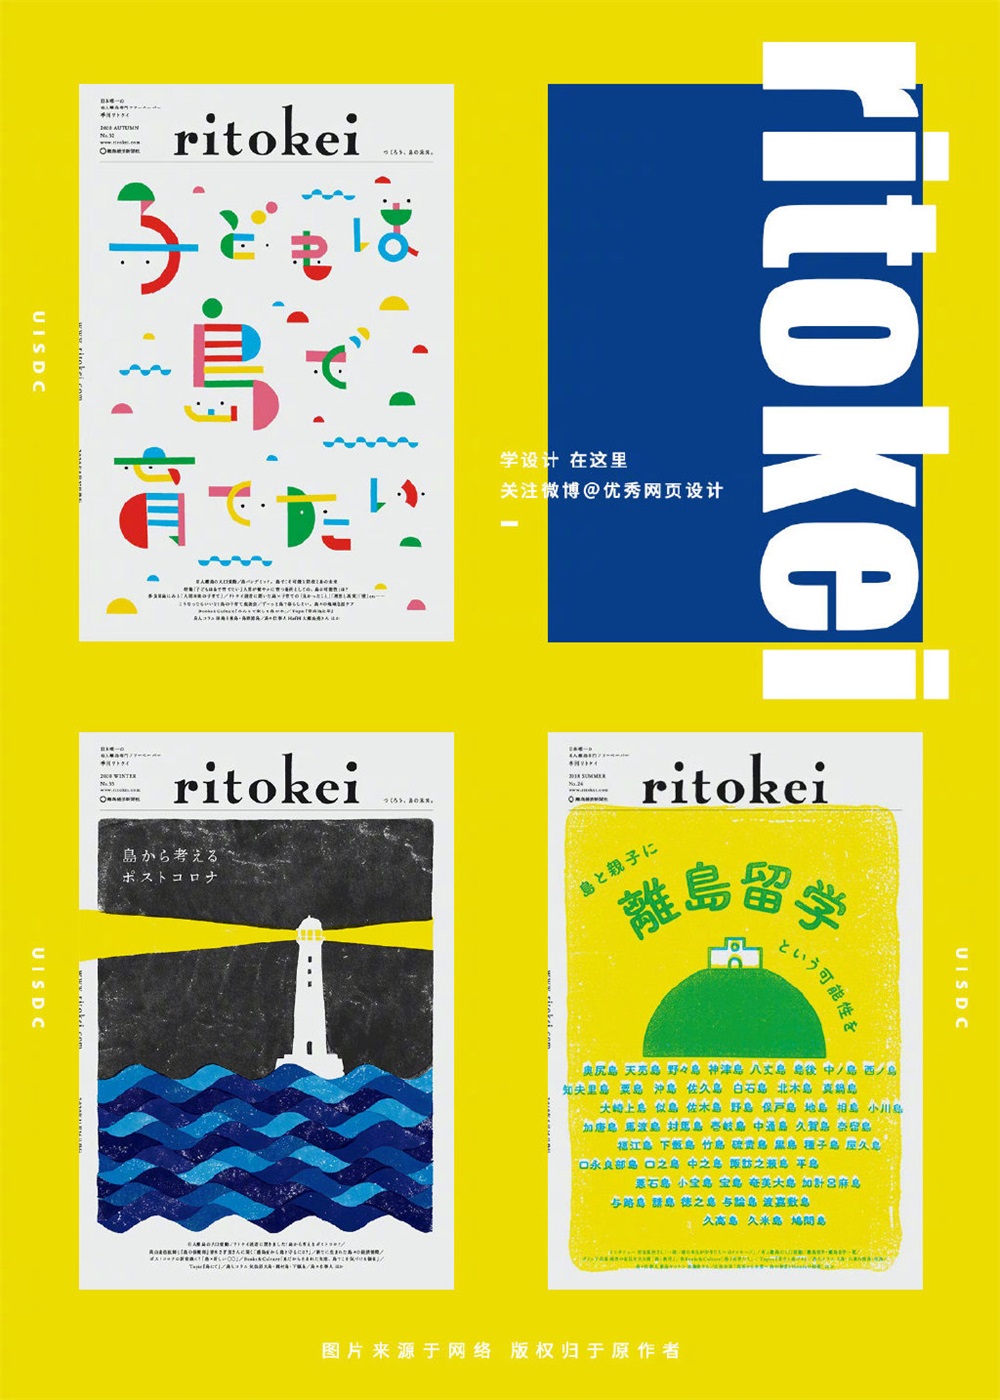 9组 ritokei 杂志的封面插画